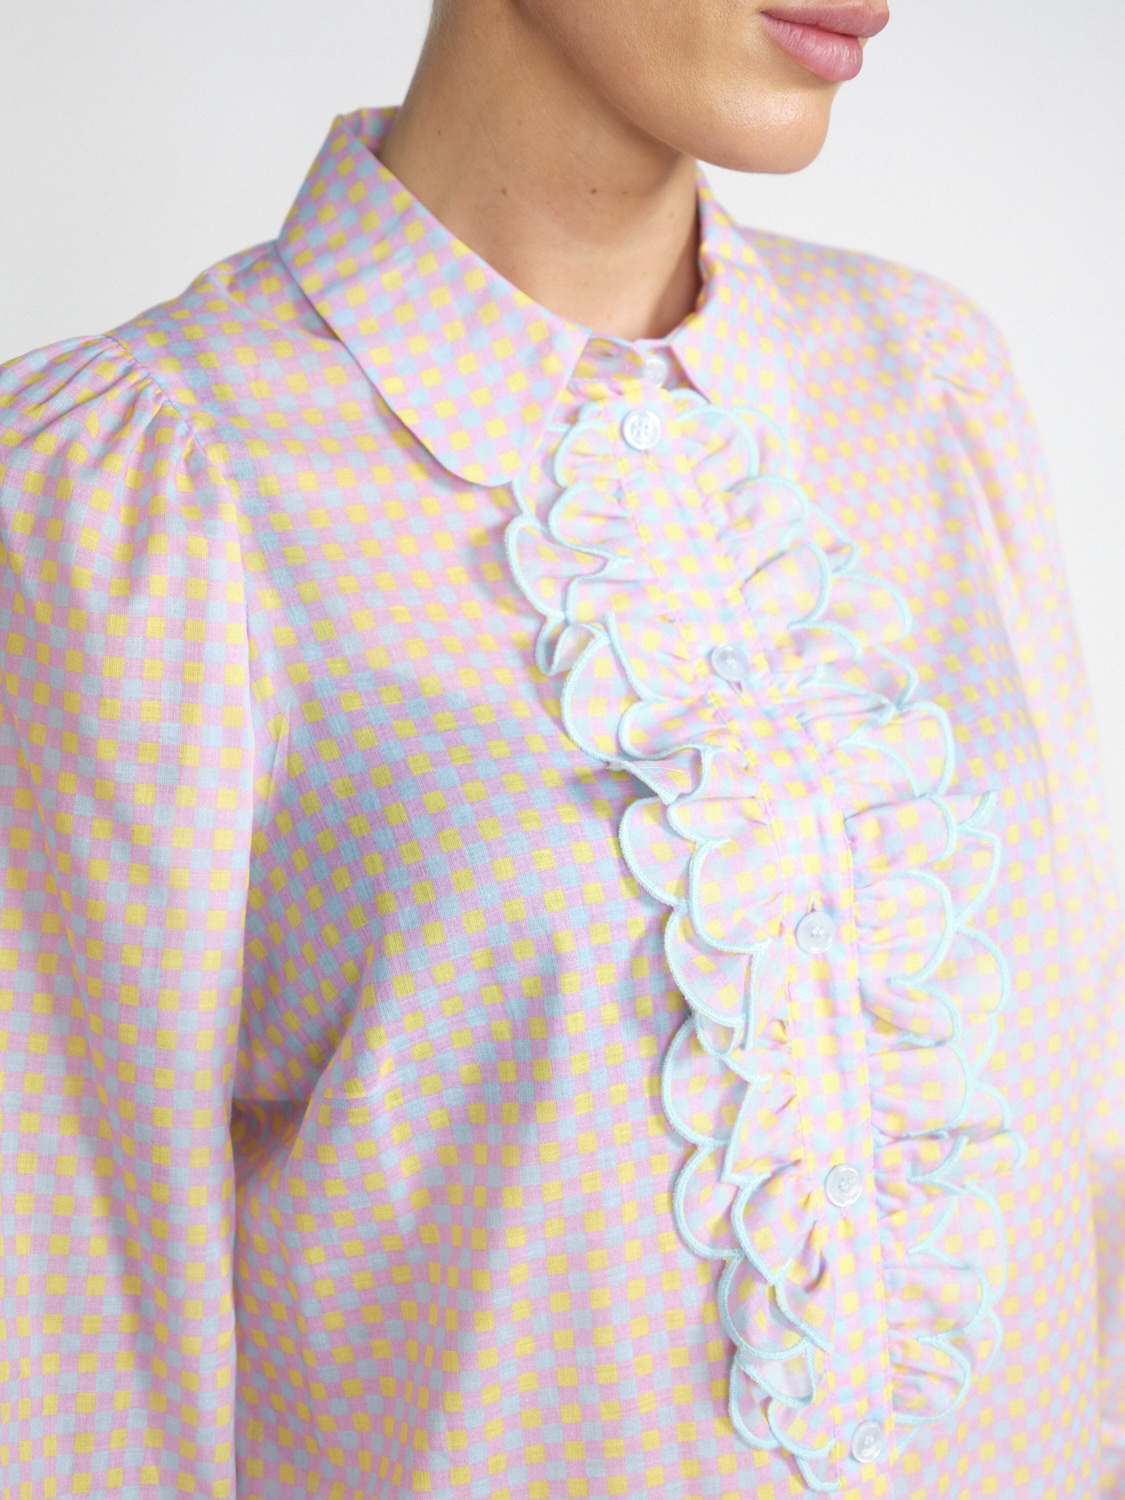 Maison Common Baumwoll-Bluse mit Schachbrett-Muster und Rüschen-Detail	  multi 40